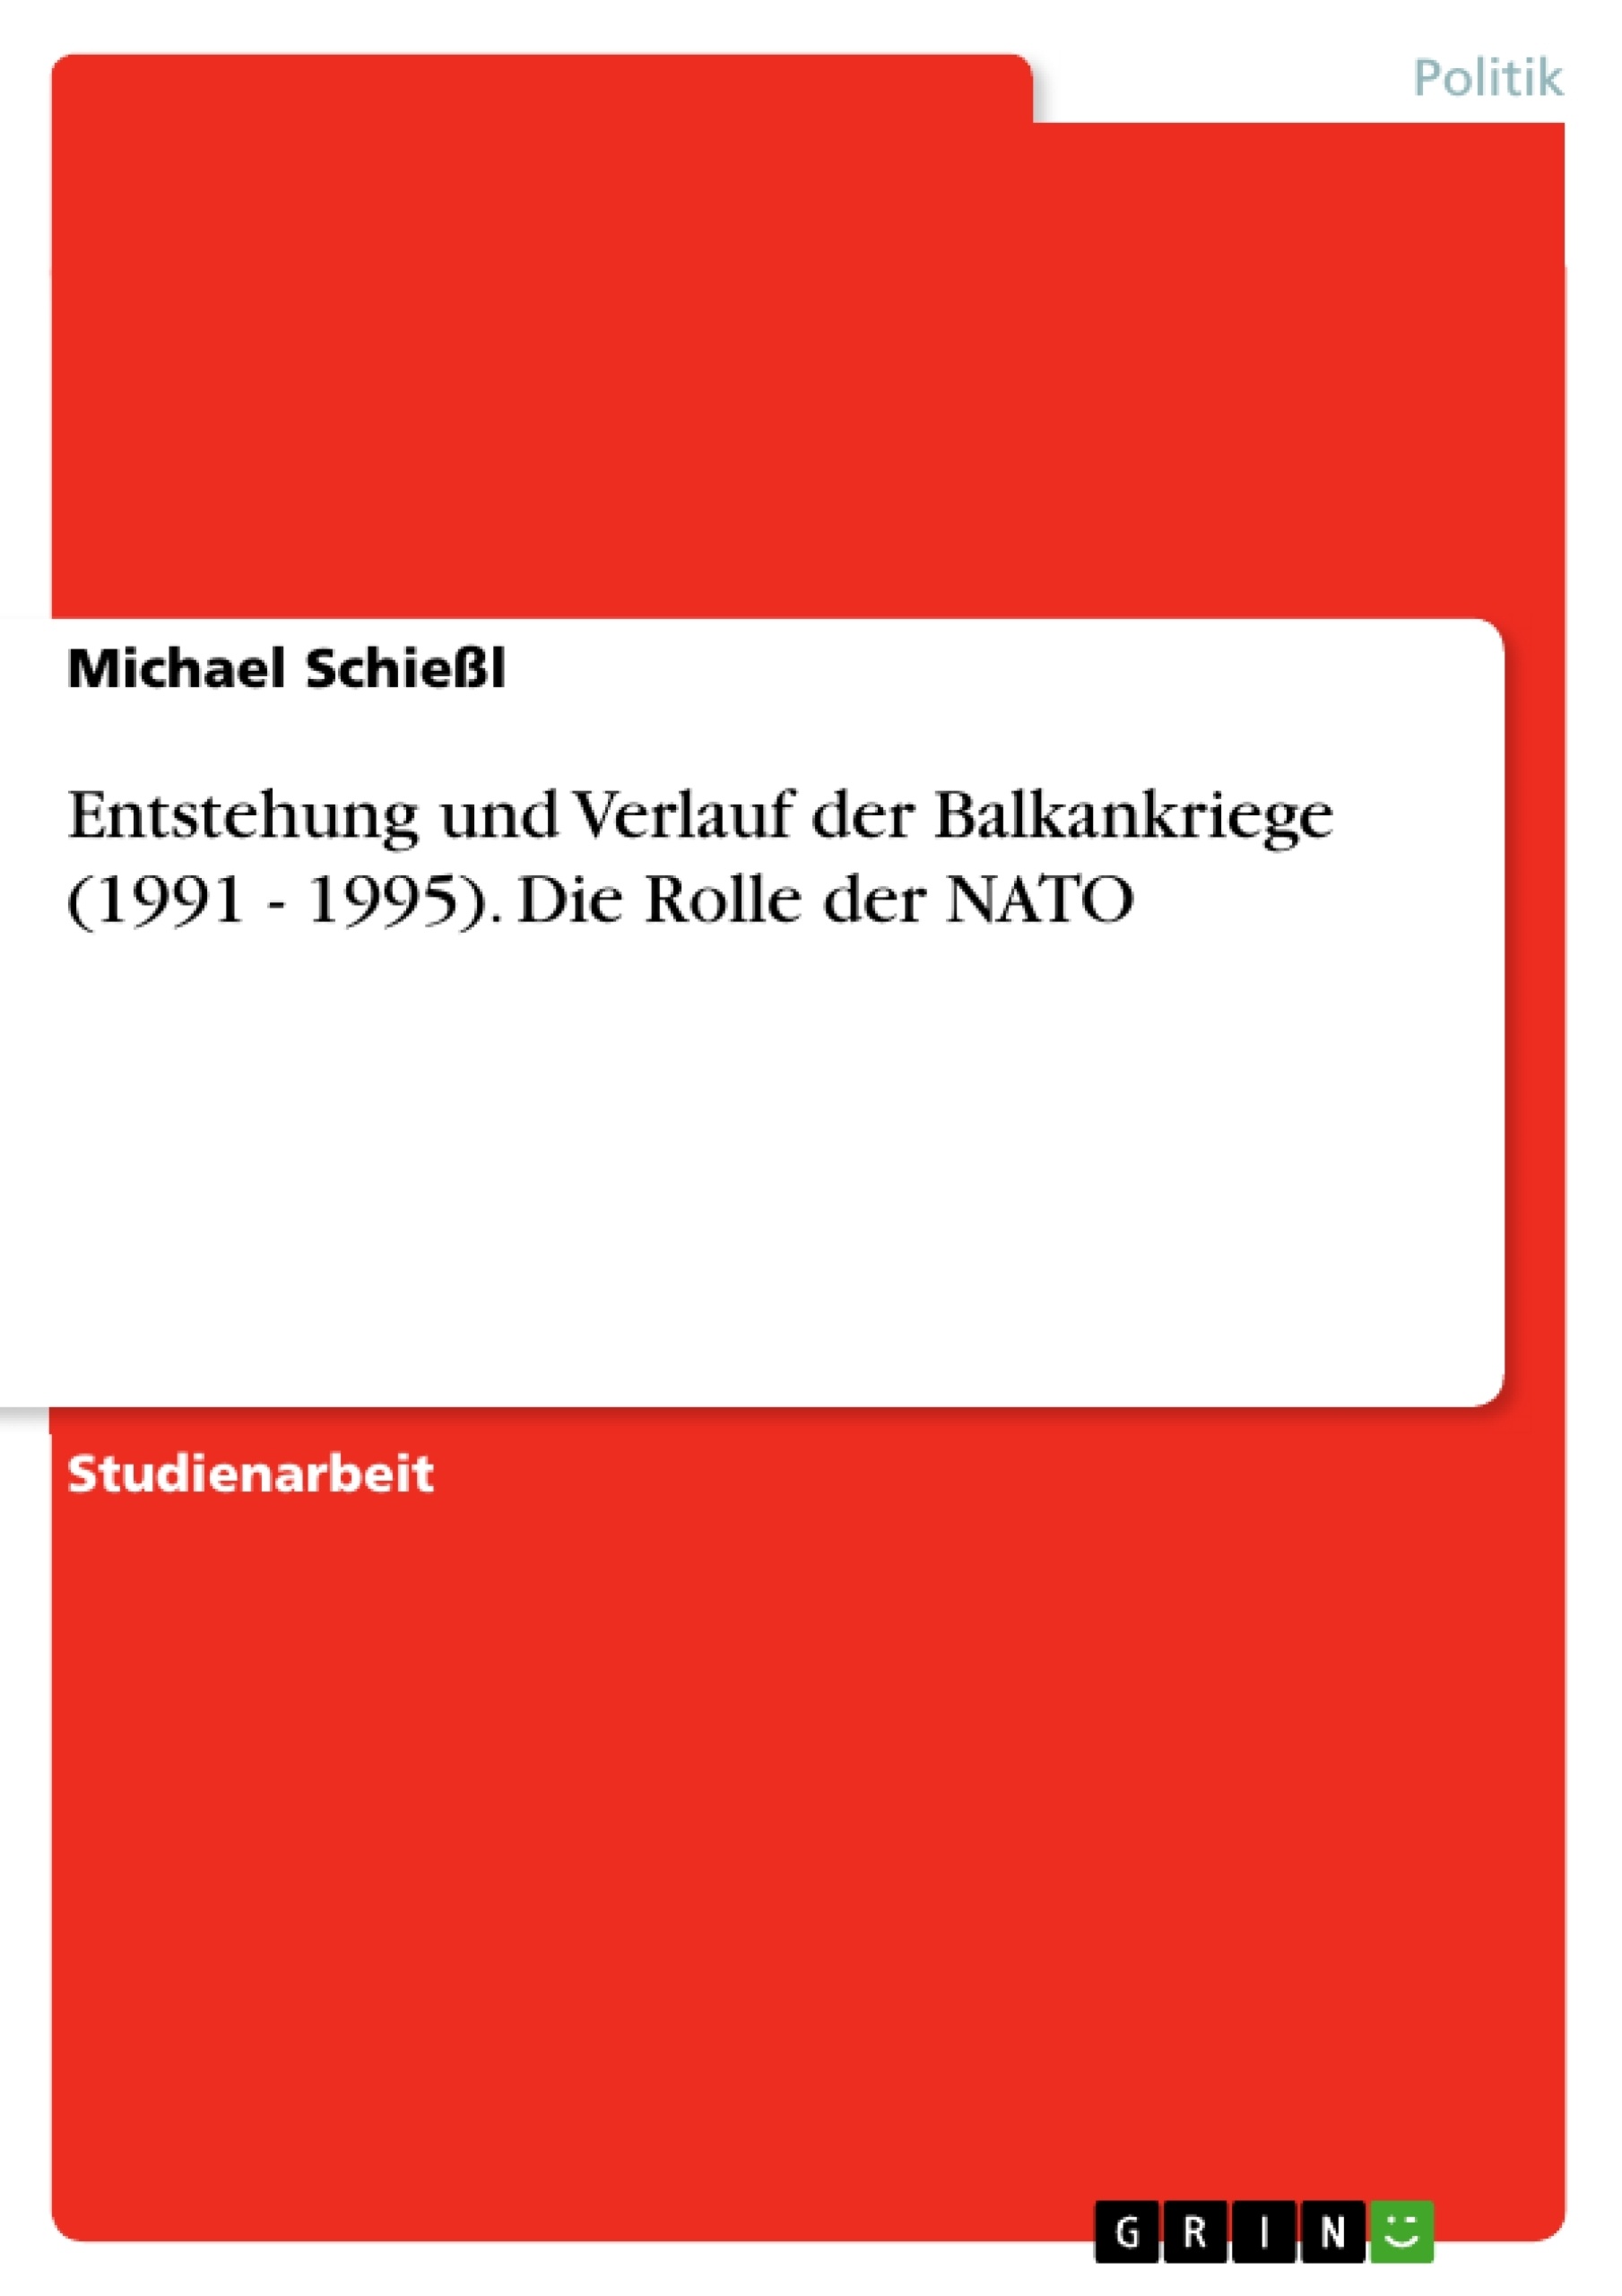 Title: Entstehung und Verlauf der Balkankriege (1991 - 1995). Die Rolle der NATO